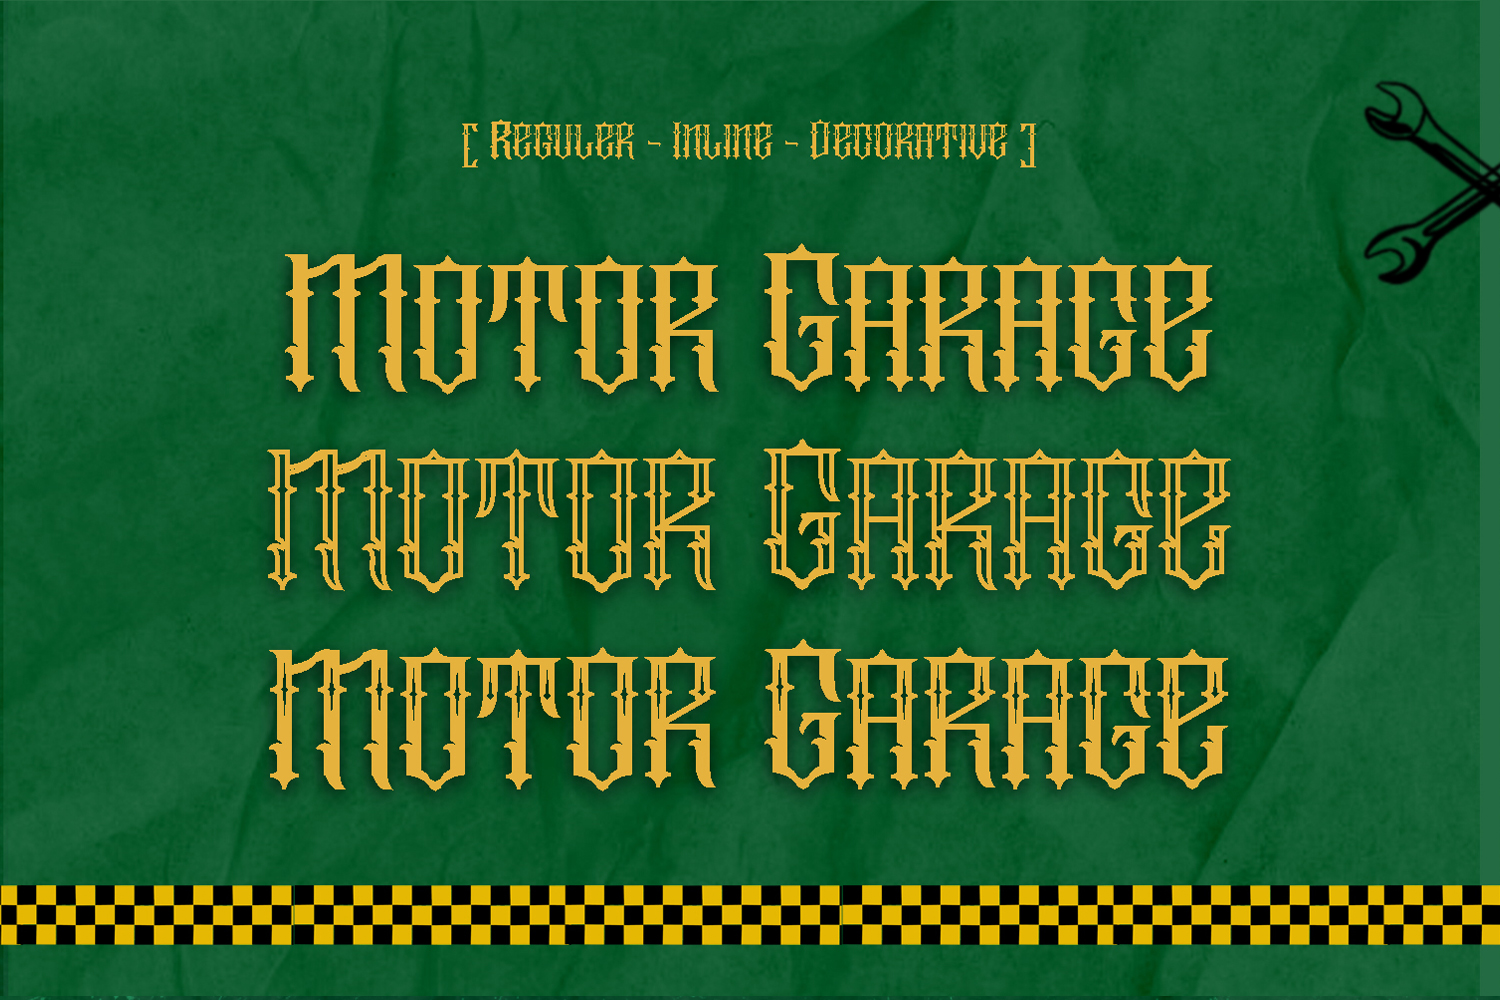 Motor Garage